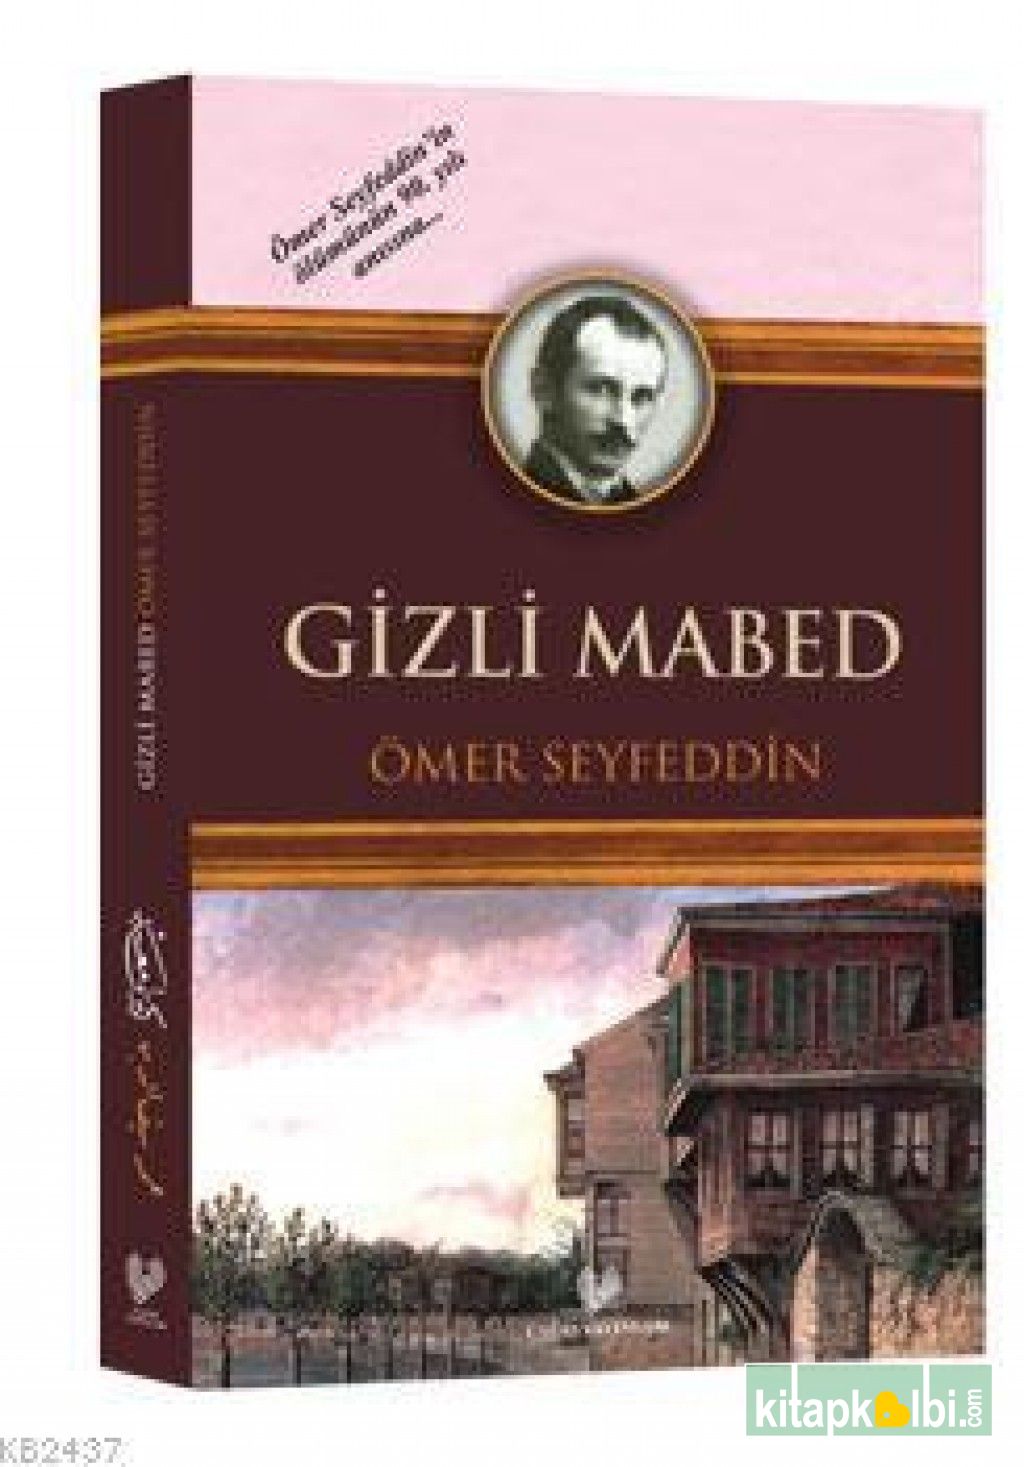 Gizli Mabed-Osmanlı Türkçesi Aslı İle Birlikte